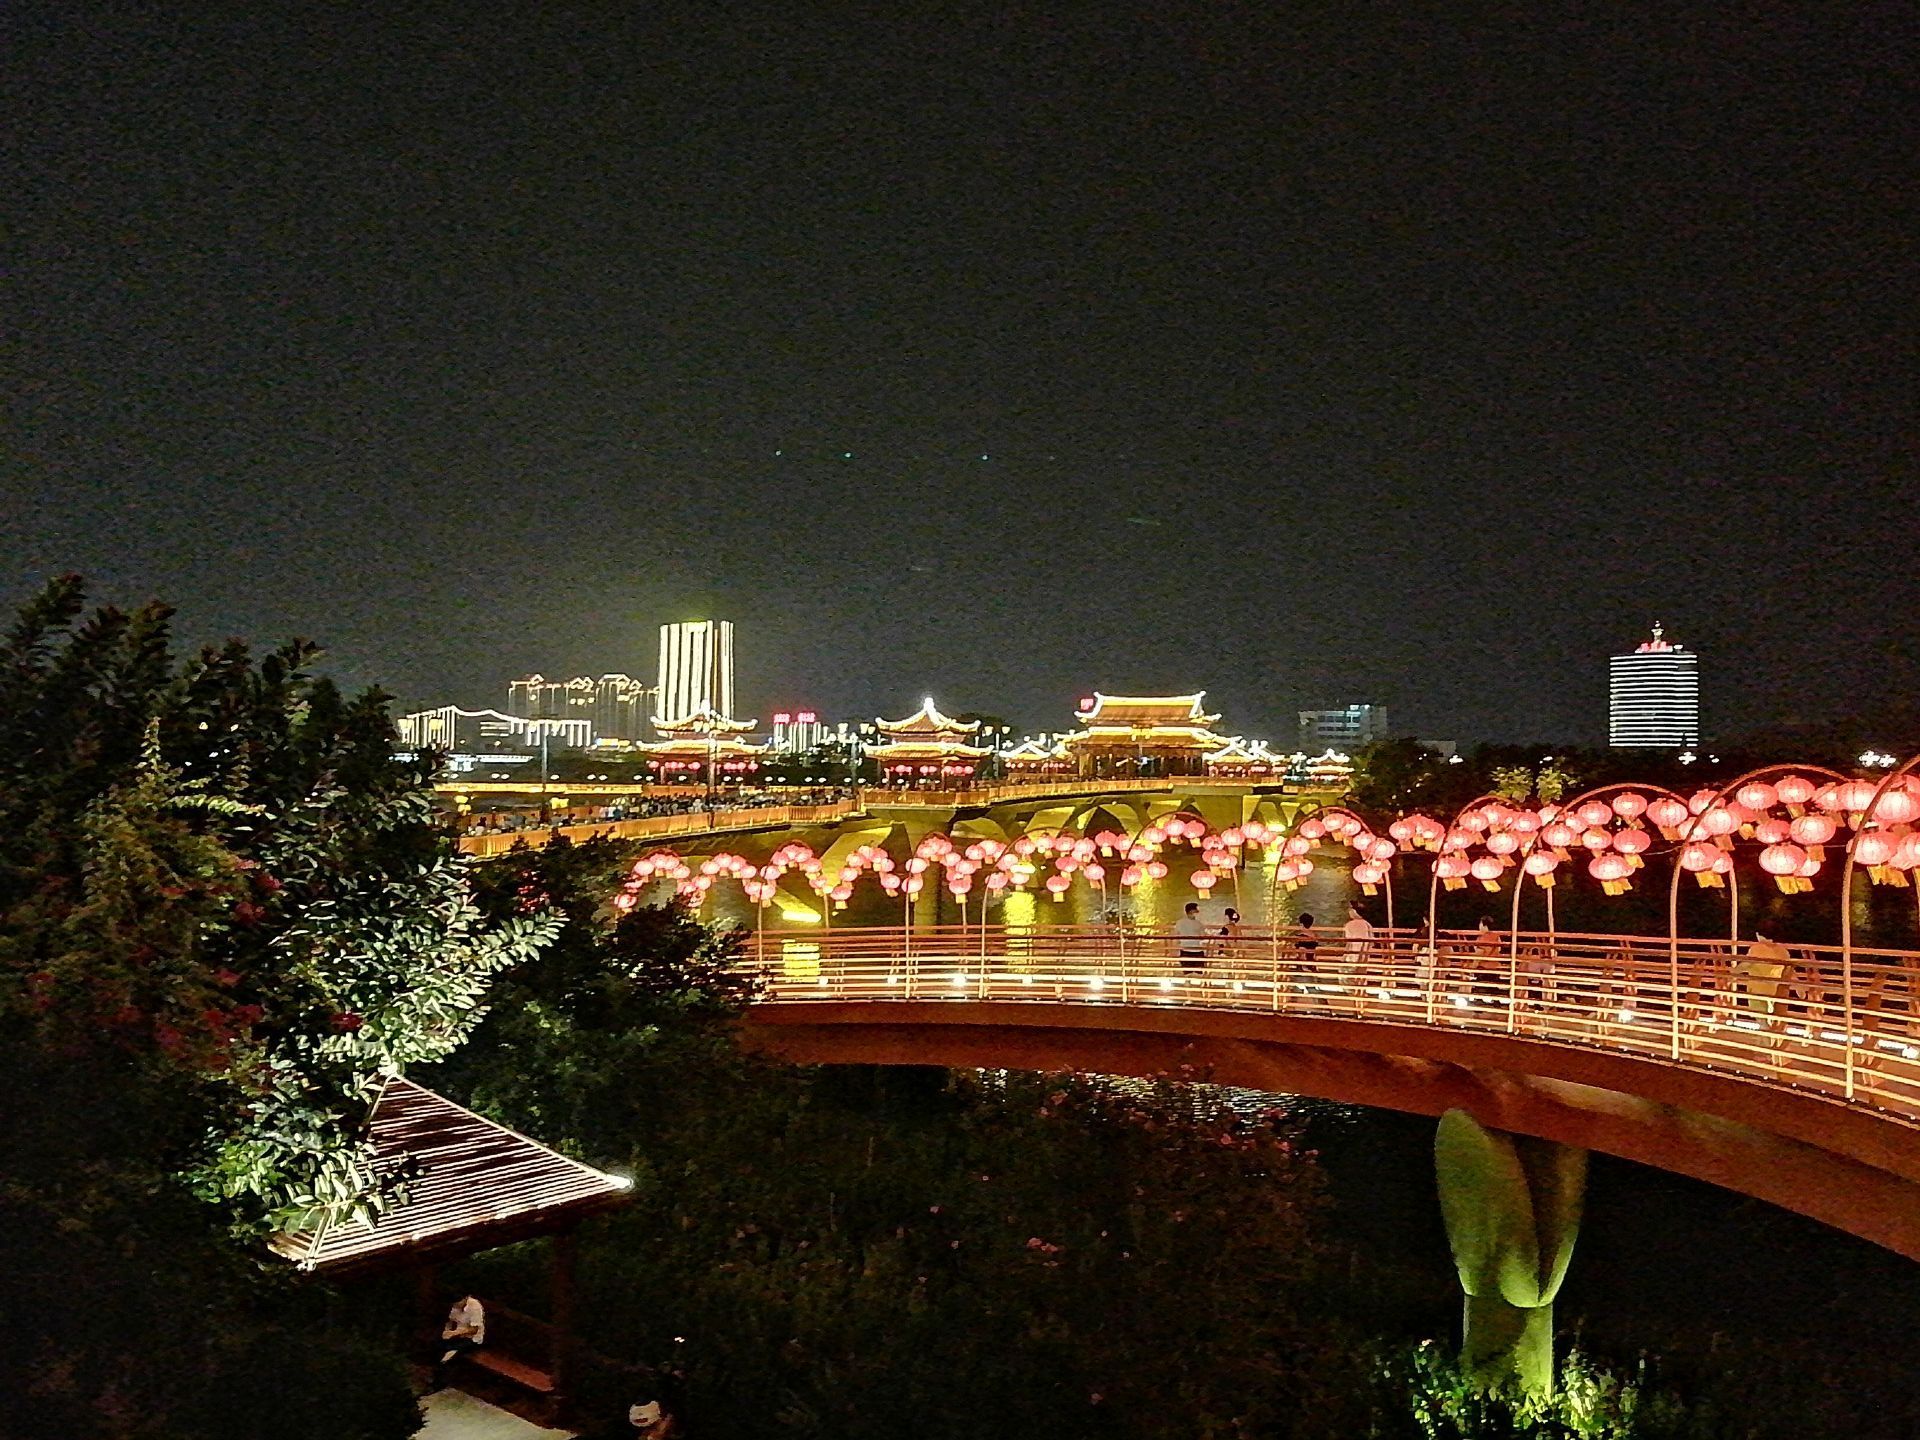 清流县夜景图片